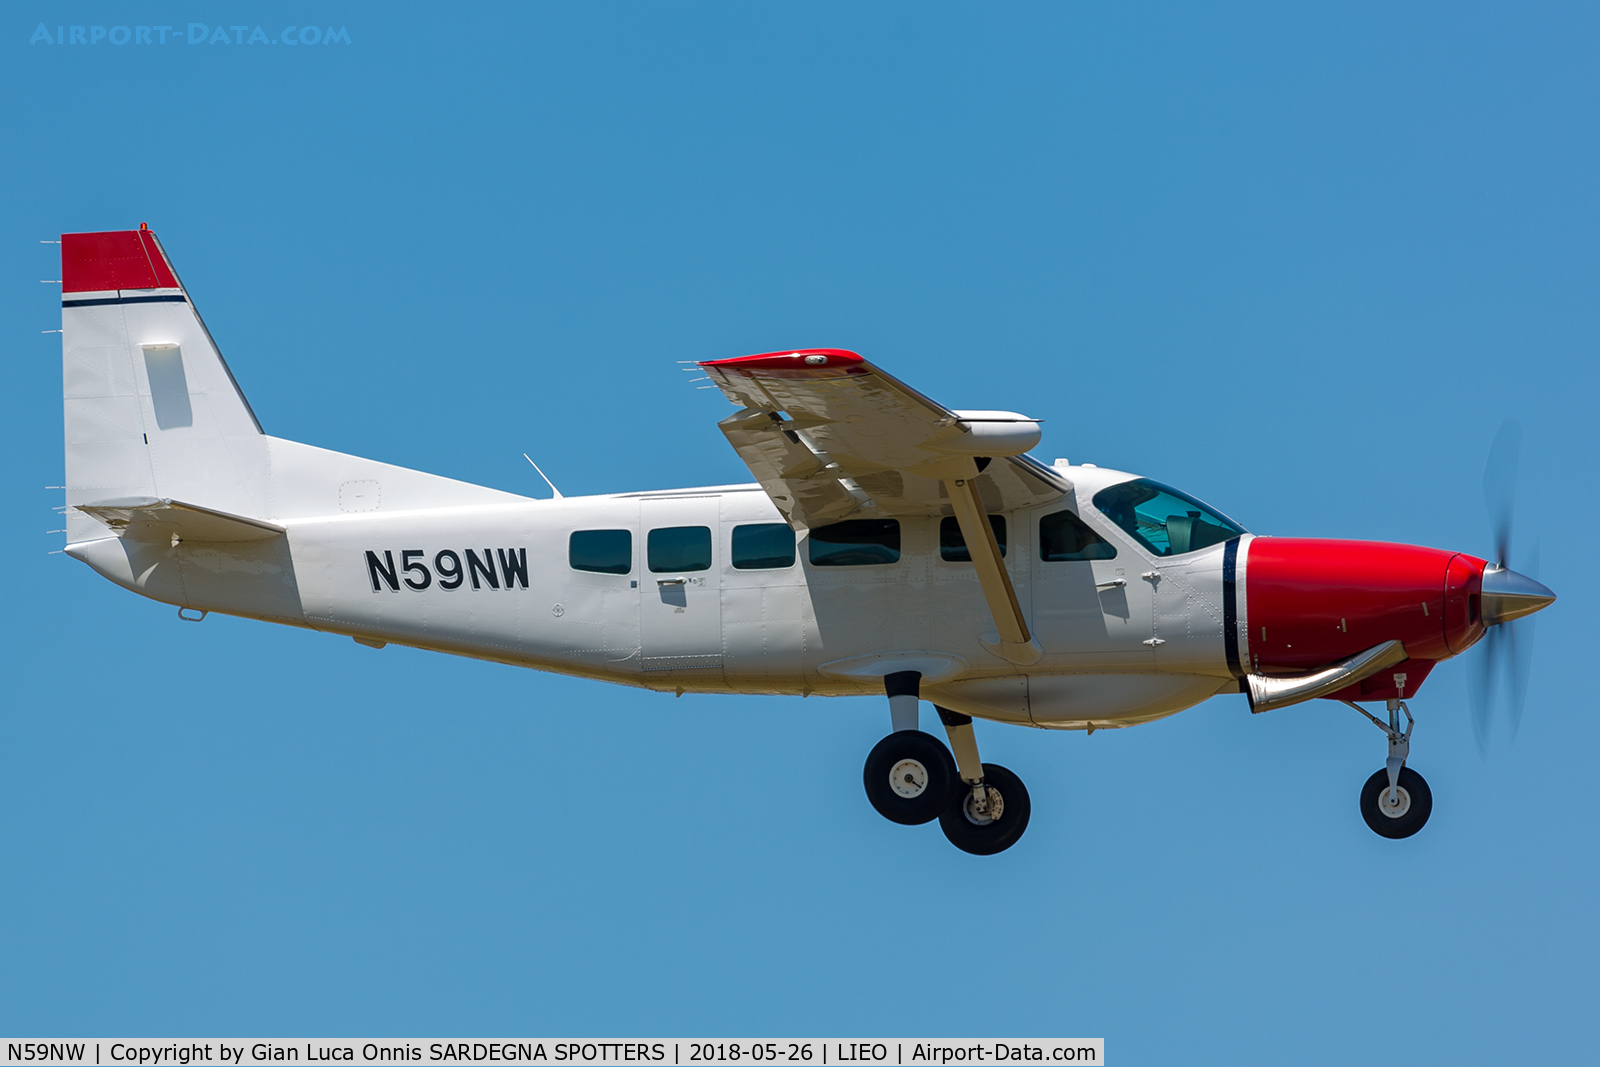 N59NW, 2013 Cessna 208 Caravan I C/N 208-00546, LANDING 05R